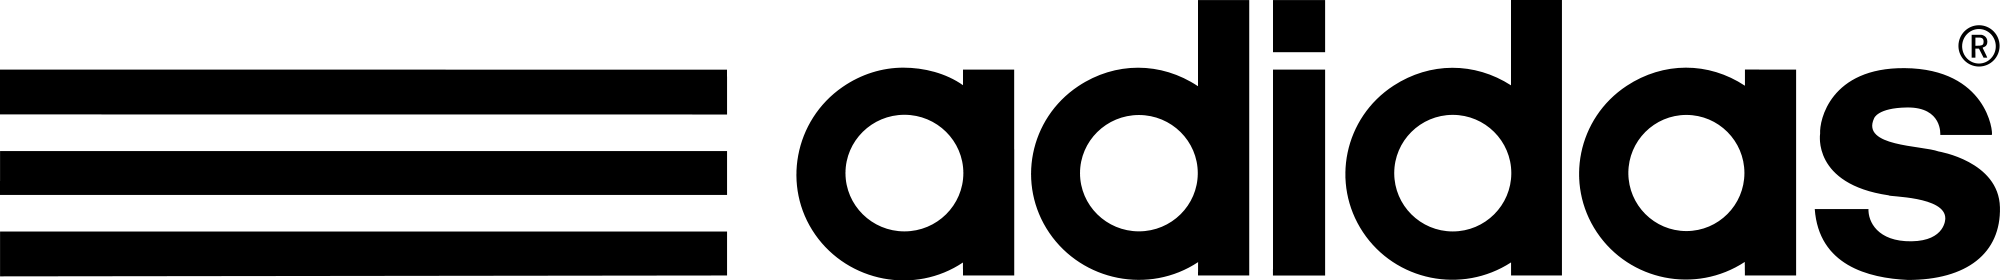 ADIDAS logo PNG imagen de fondo